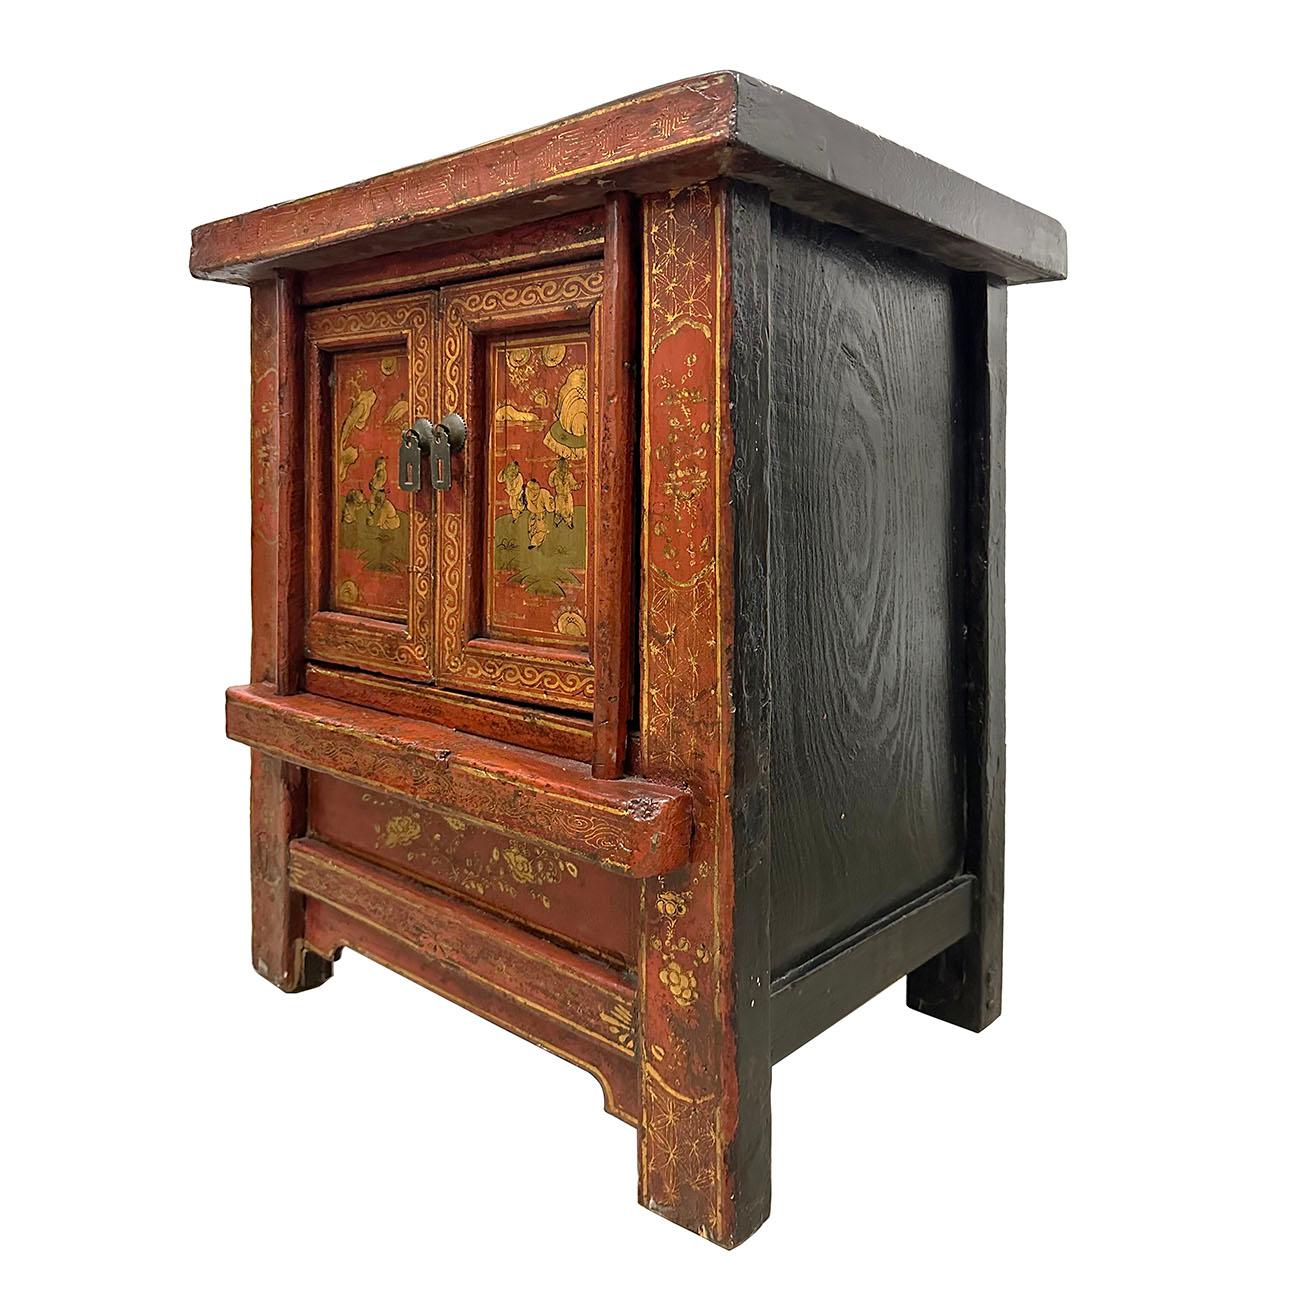 Ein chinesischer Nachttisch aus bemaltem Holz der späten Qing-Dynastie aus dem frühen 20. Jahrhundert, mit zwei Türen, geschnitzter Schürze und Volkskunstmalerei. Dieser hölzerne Nachttisch, der in China während der späten Qing-Dynastie zu Beginn